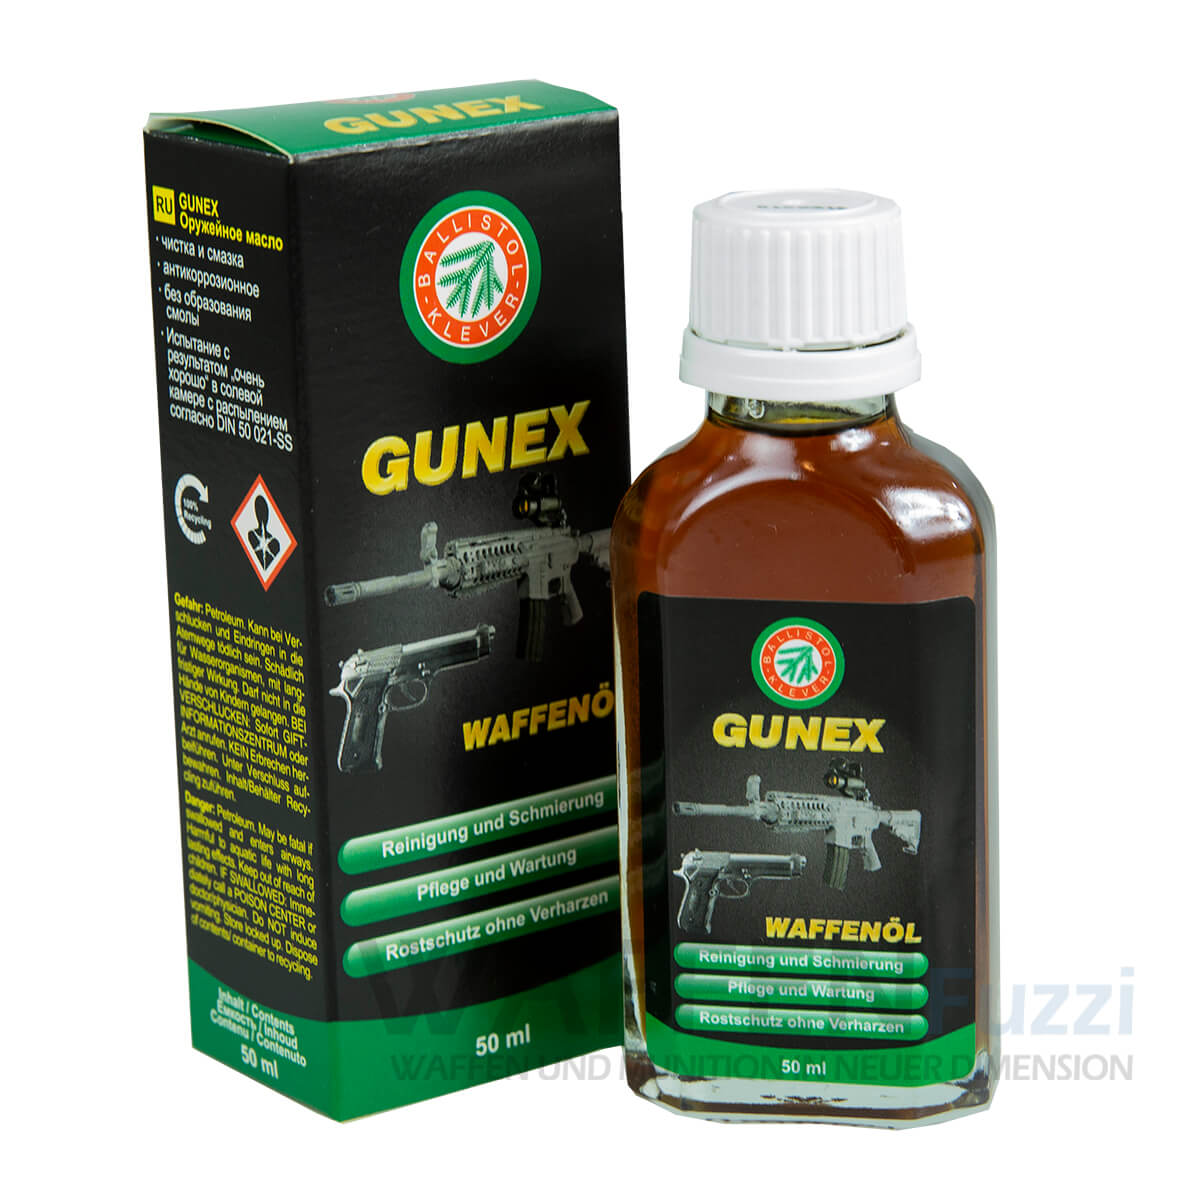 Gunex 50ml Flasche für die besondere Waffenpflege 100% Silikonfrei